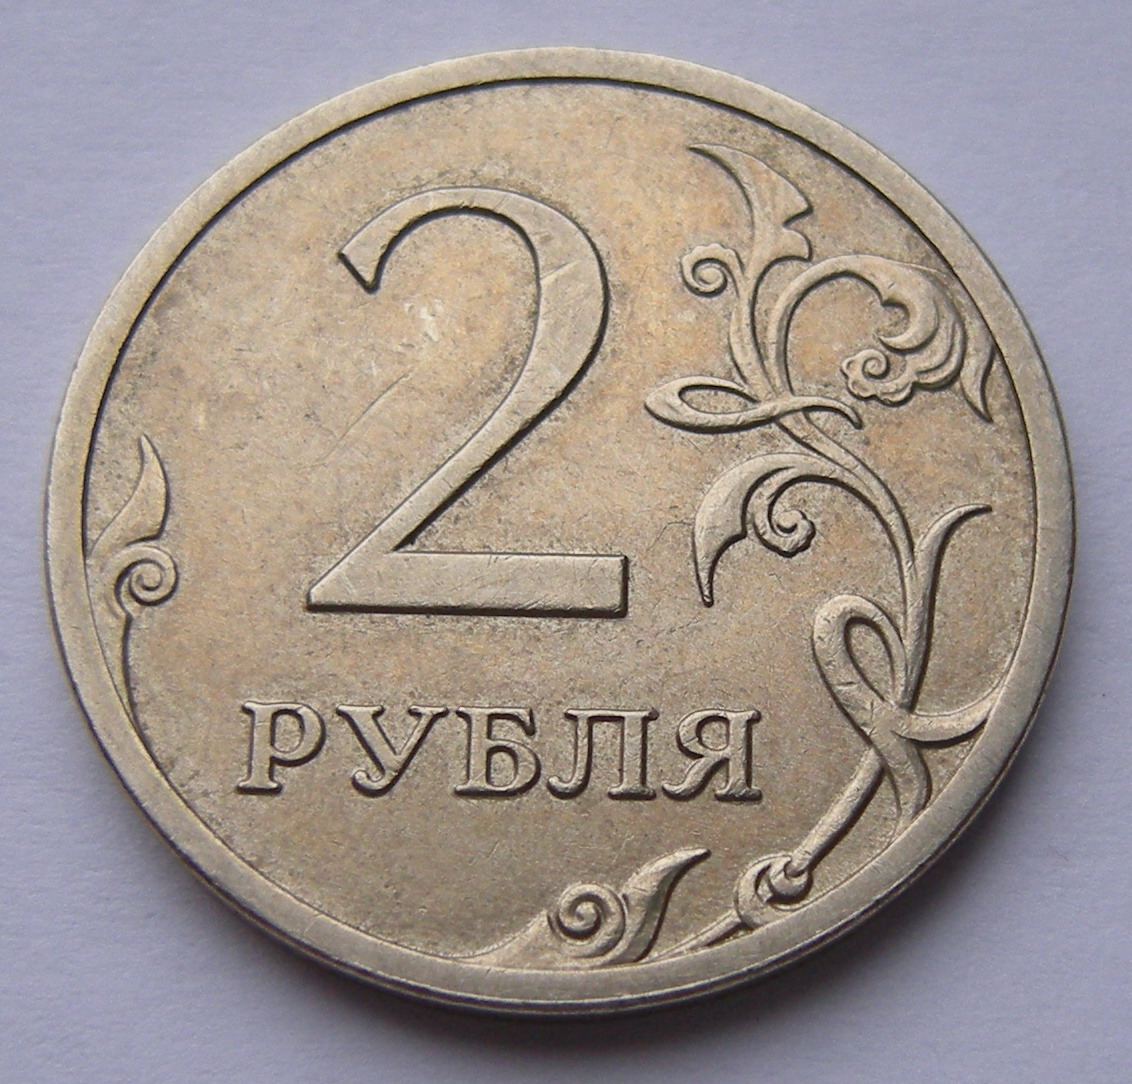 6 75 в рублях. Монета 2 рубля. Монеты 1 2 5 рублей. Изображение монет. Монеты 1 руб 2 руб.